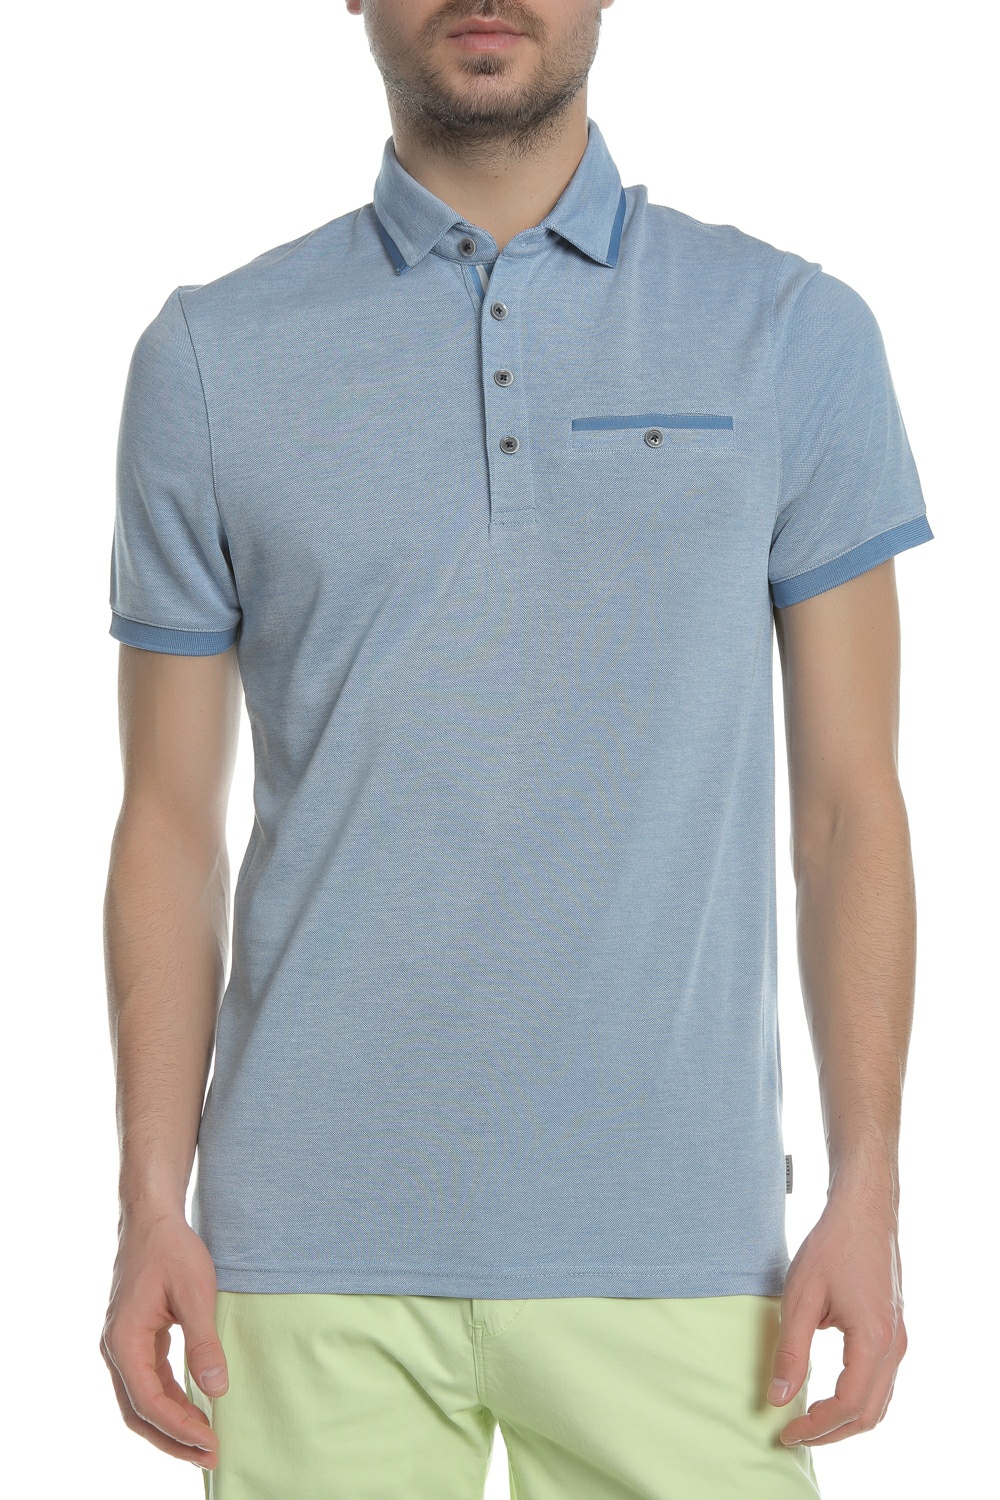 Ανδρικά/Ρούχα/Μπλούζες/Πόλο TED BAKER - Ανδρικό πόλο t-shirt TED BAKER JAKTURC SOFT TOUCH γαλάζιο